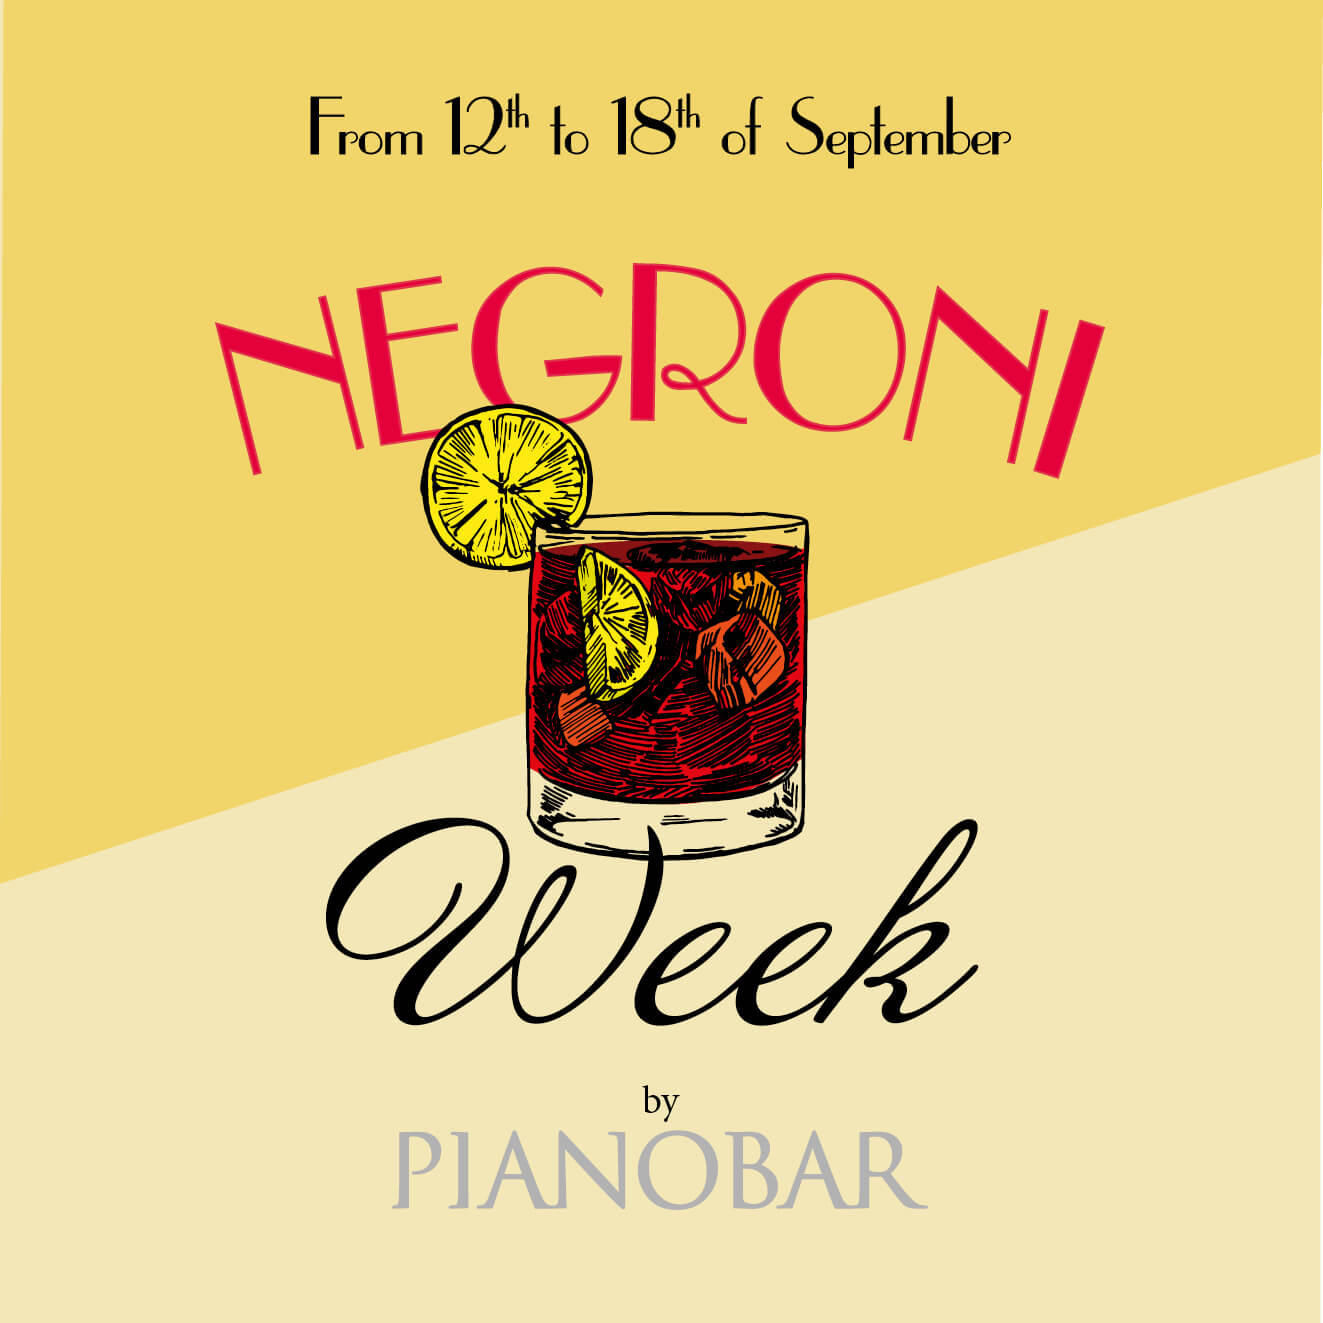 Negroni week